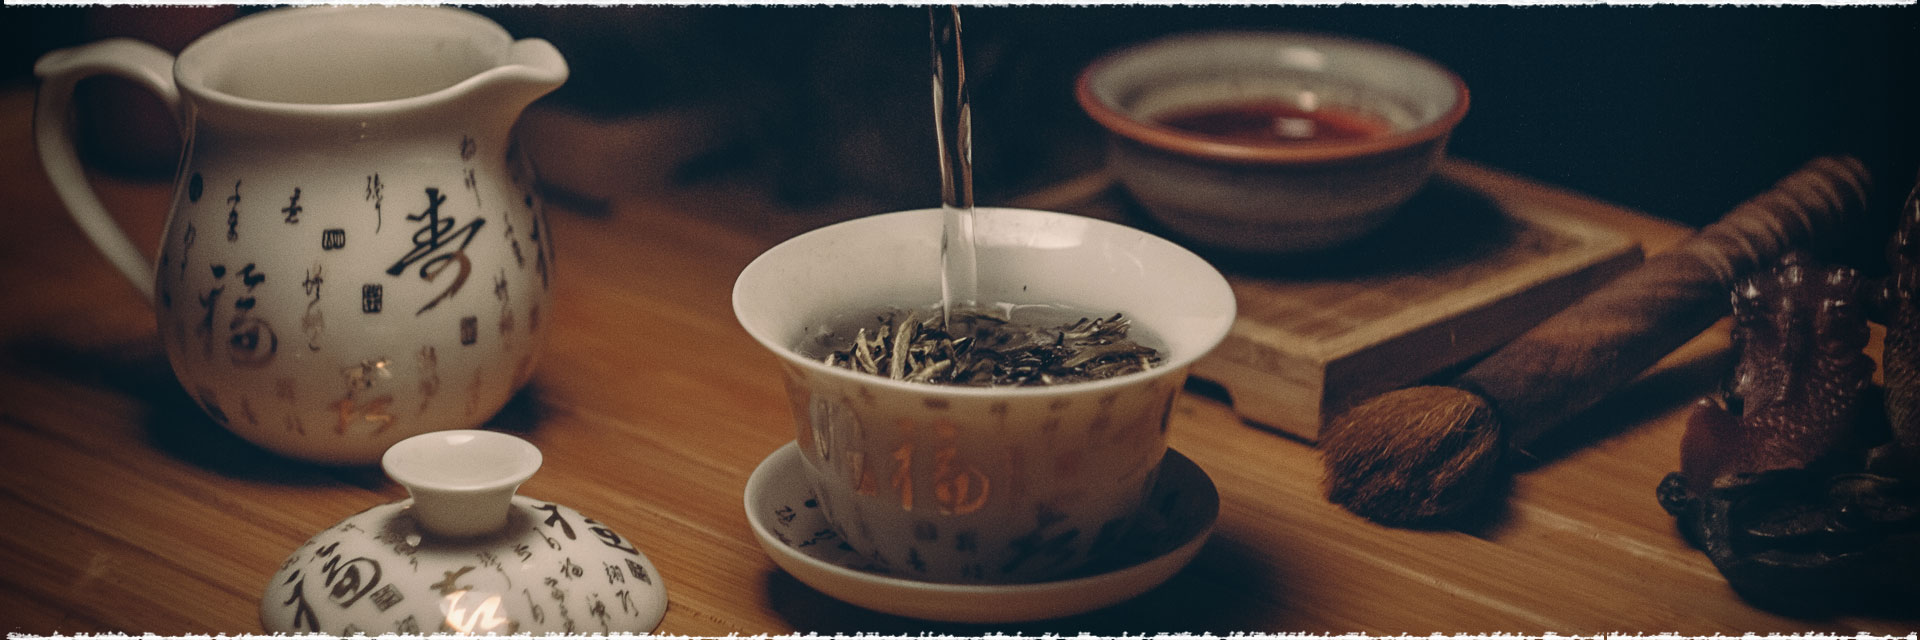 Préparation du thé et choix de votre théière